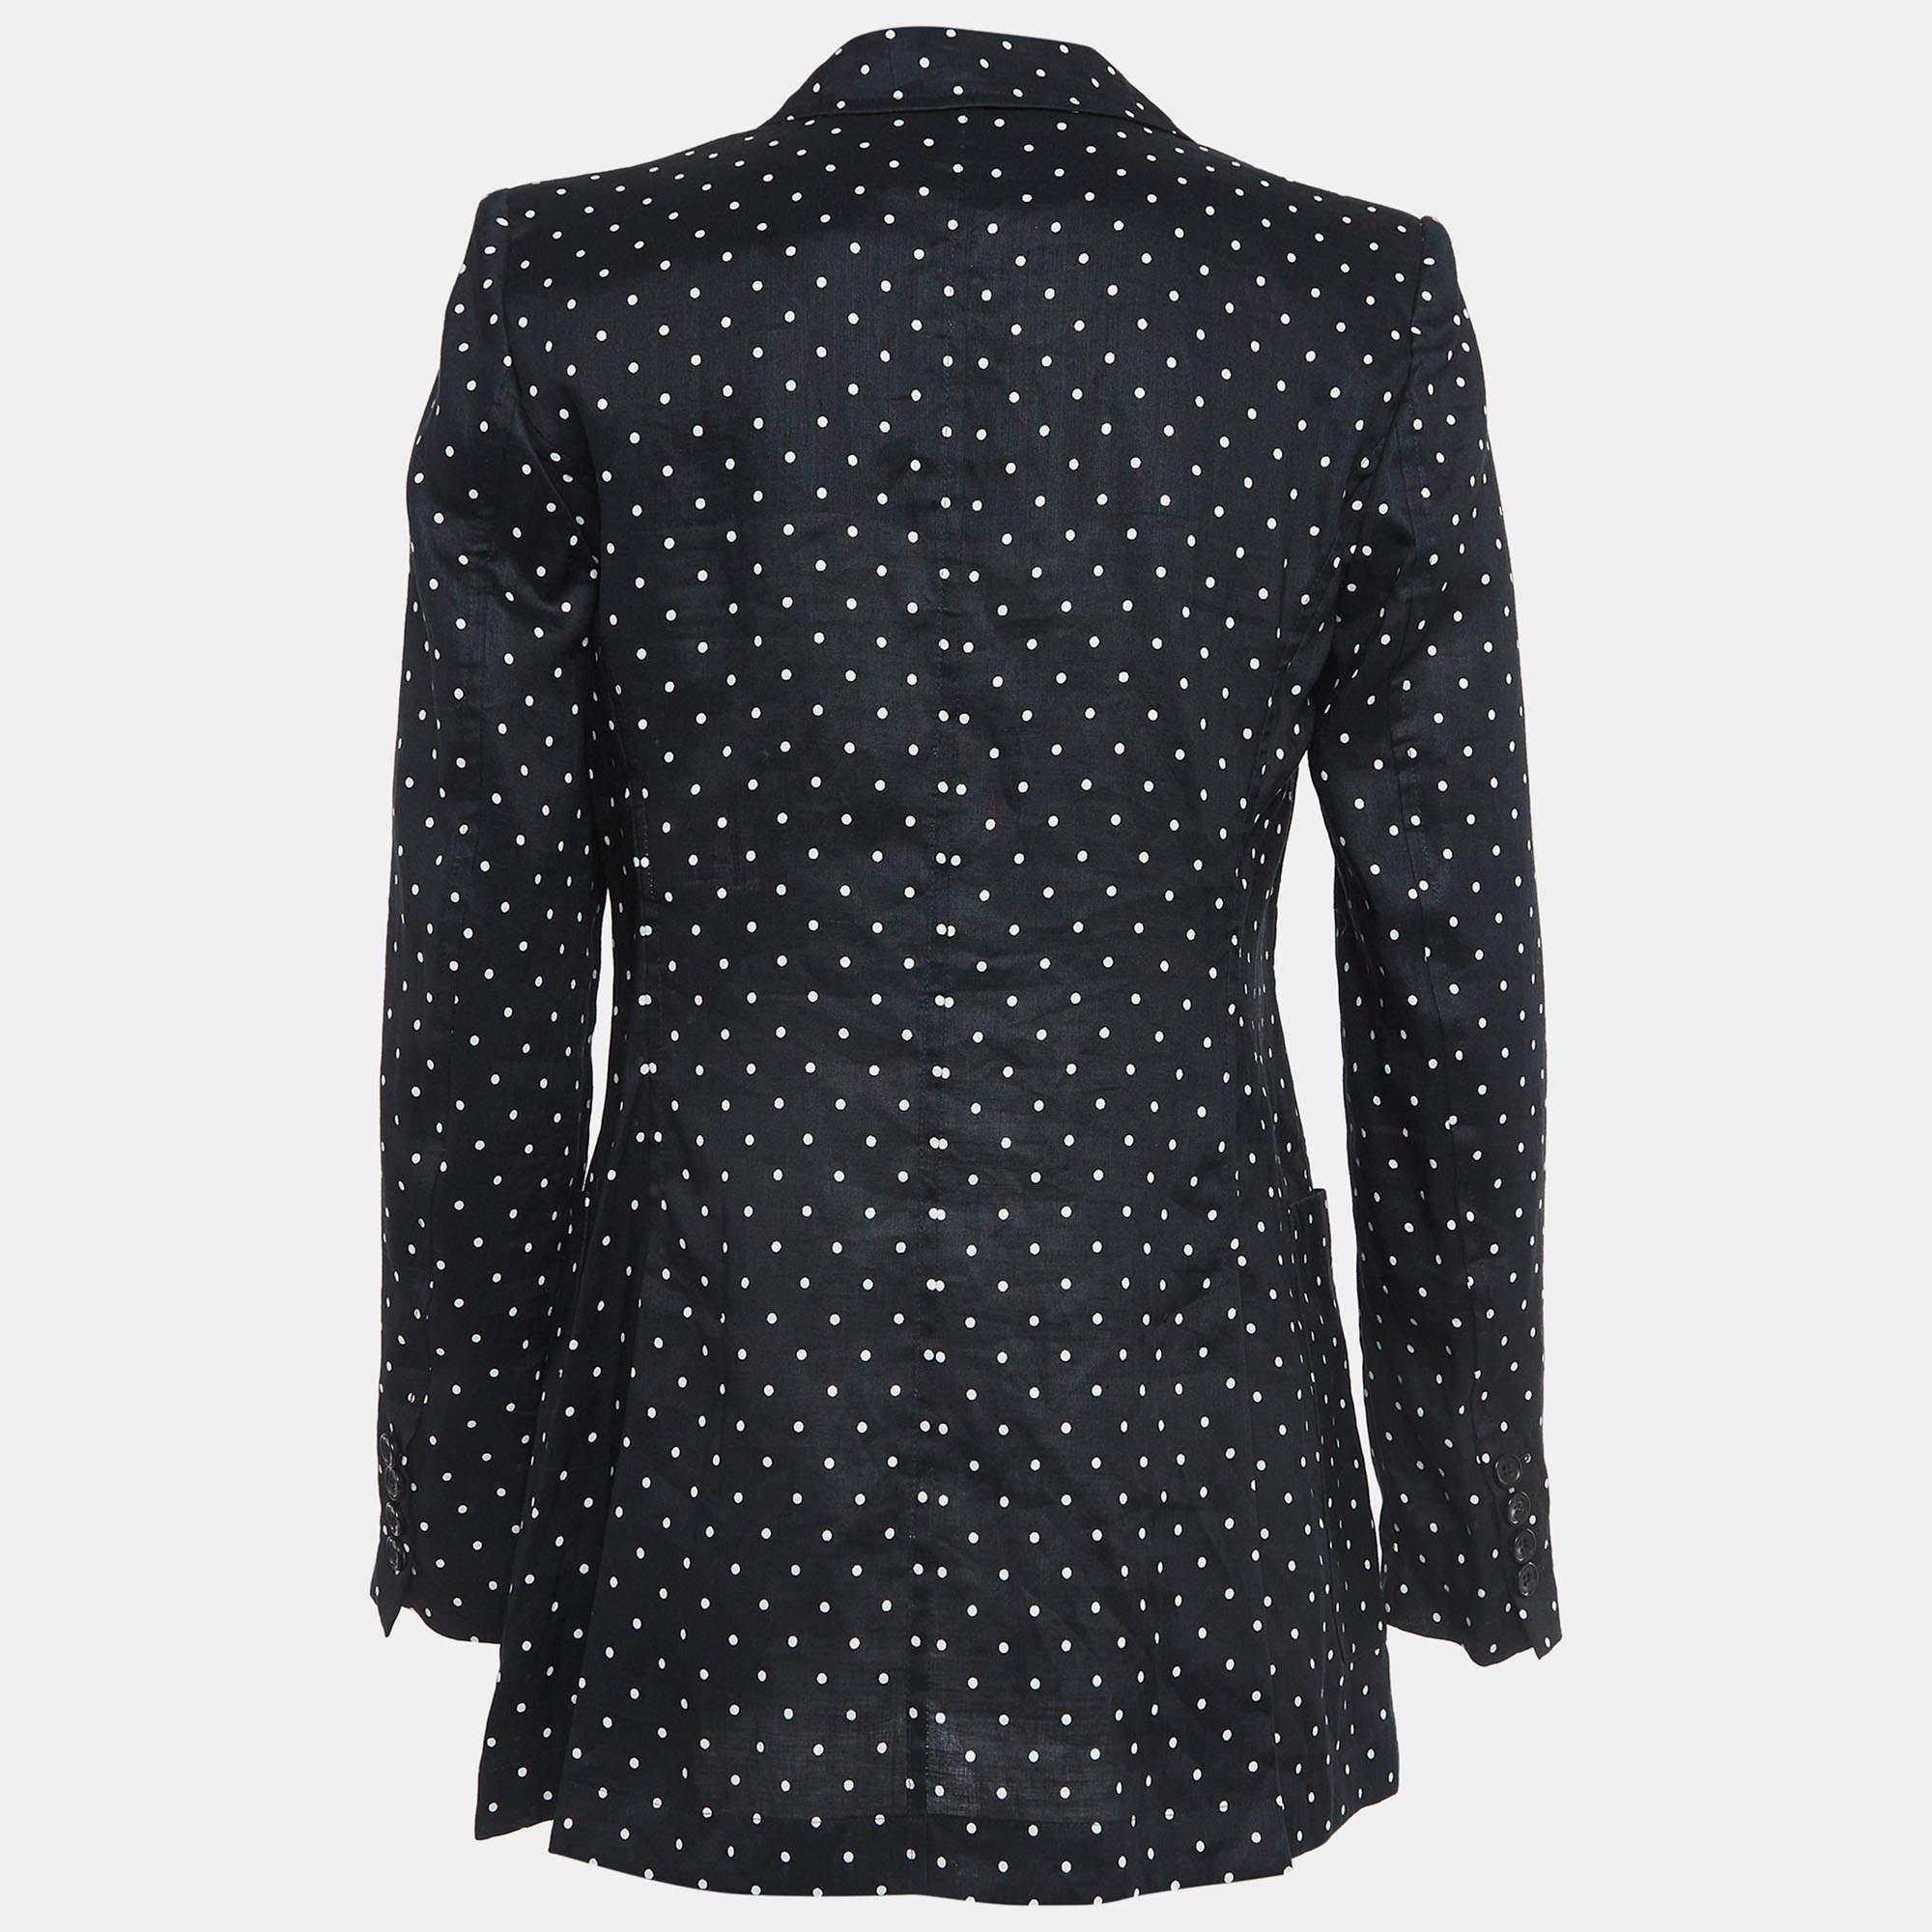 Ce blazer vous apporte à la fois classe et luxe lorsque vous le portez. Il est souligné par des manches longues et des détails classiques, ce qui lui confère une finition polie et formelle.

